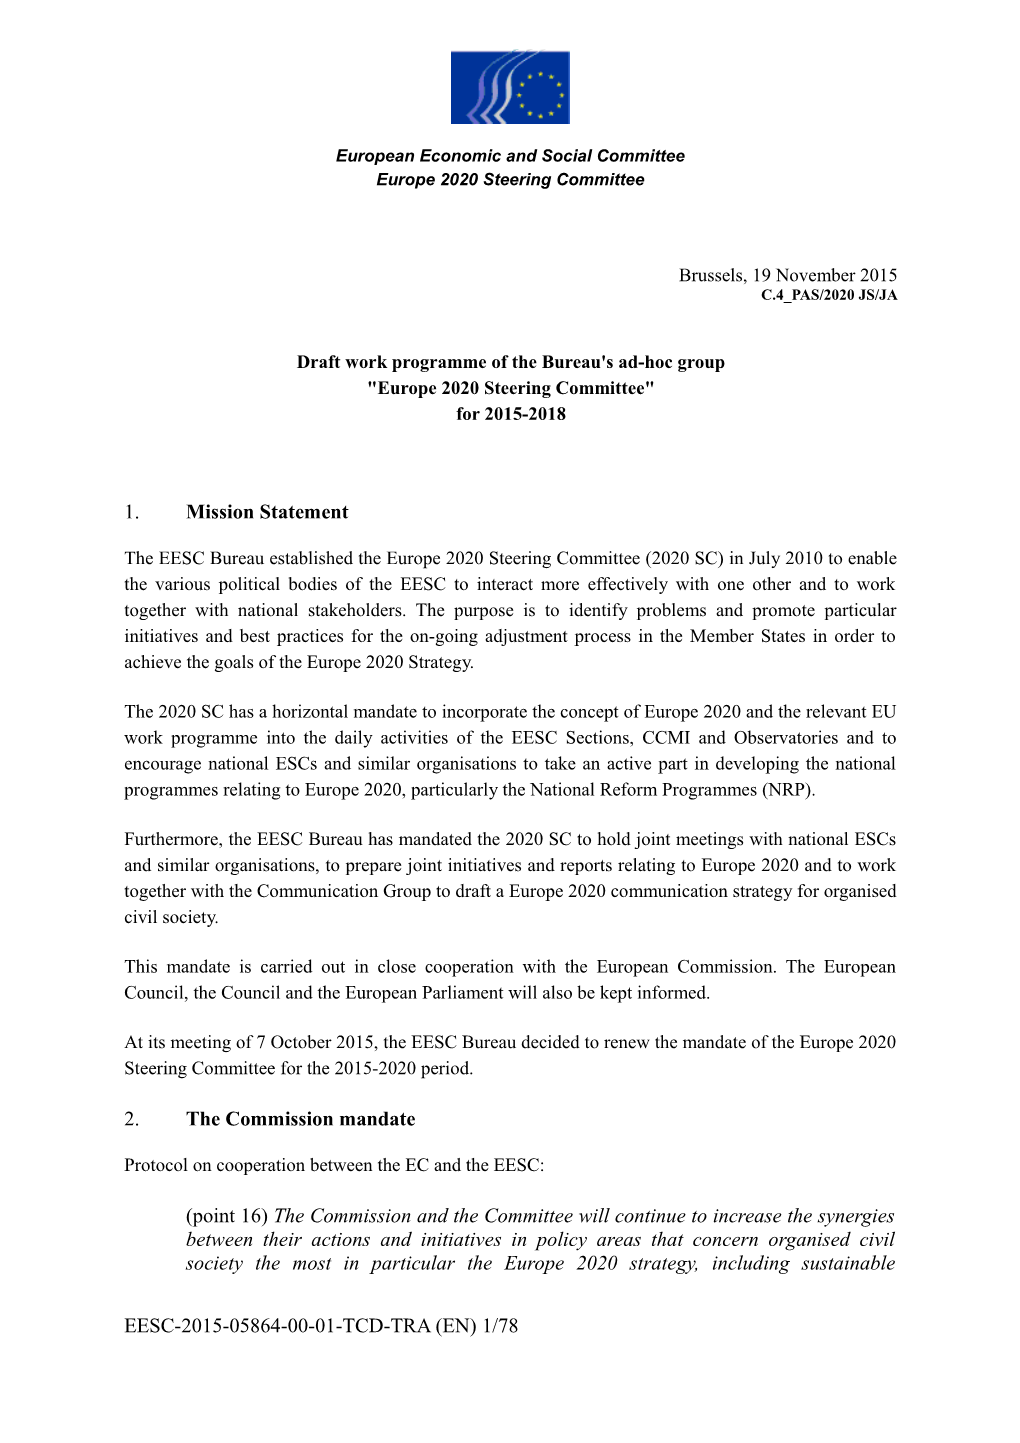 Draft Work Programme of the Europe2020 Steering Committee